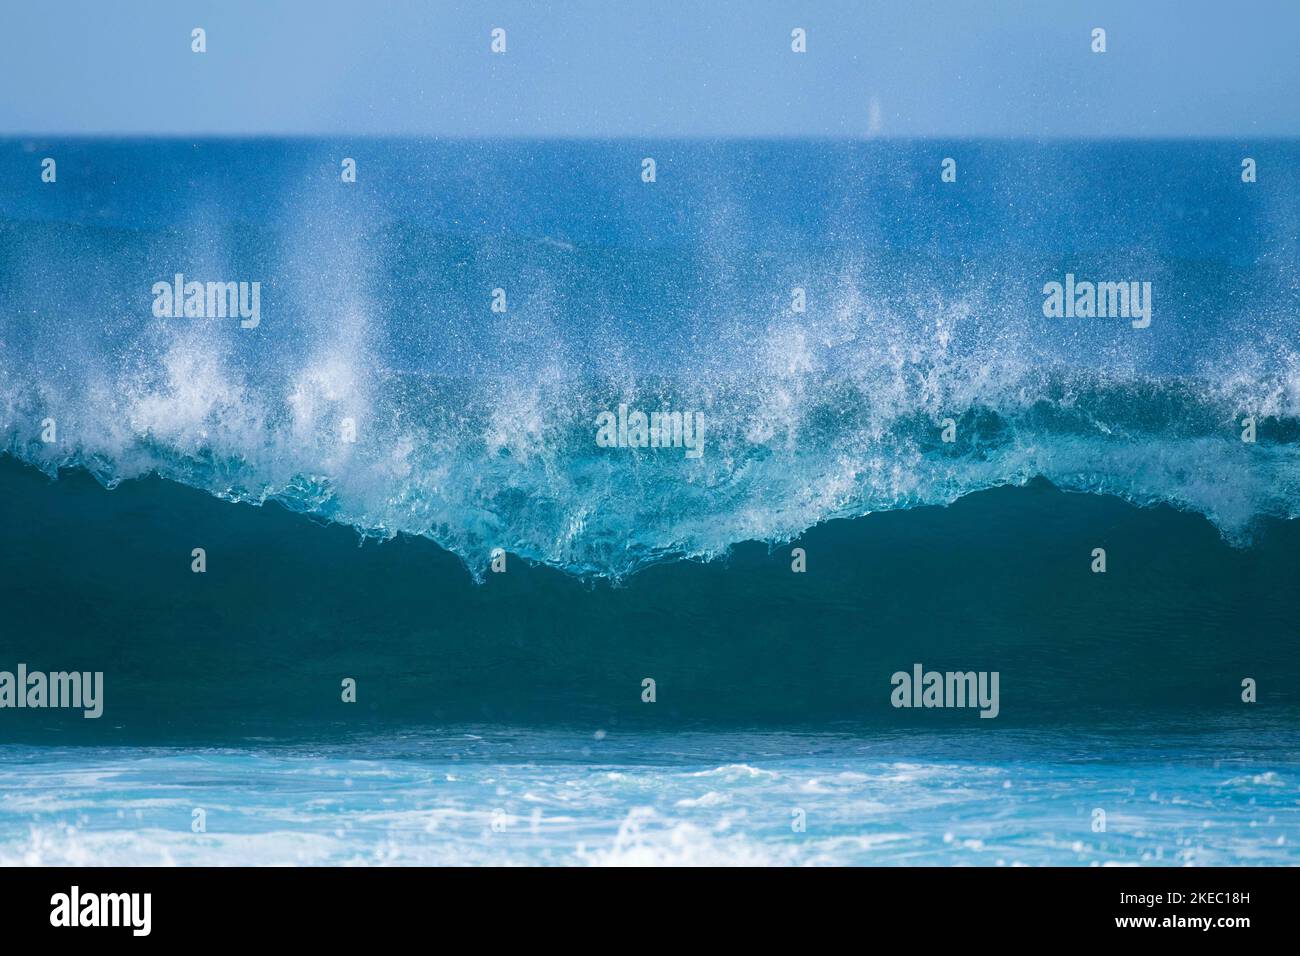 Eine wunderschöne und blaue Welle broking - Meer oder Ozean Strand - Surfen Zeit Lebensstil Stockfoto